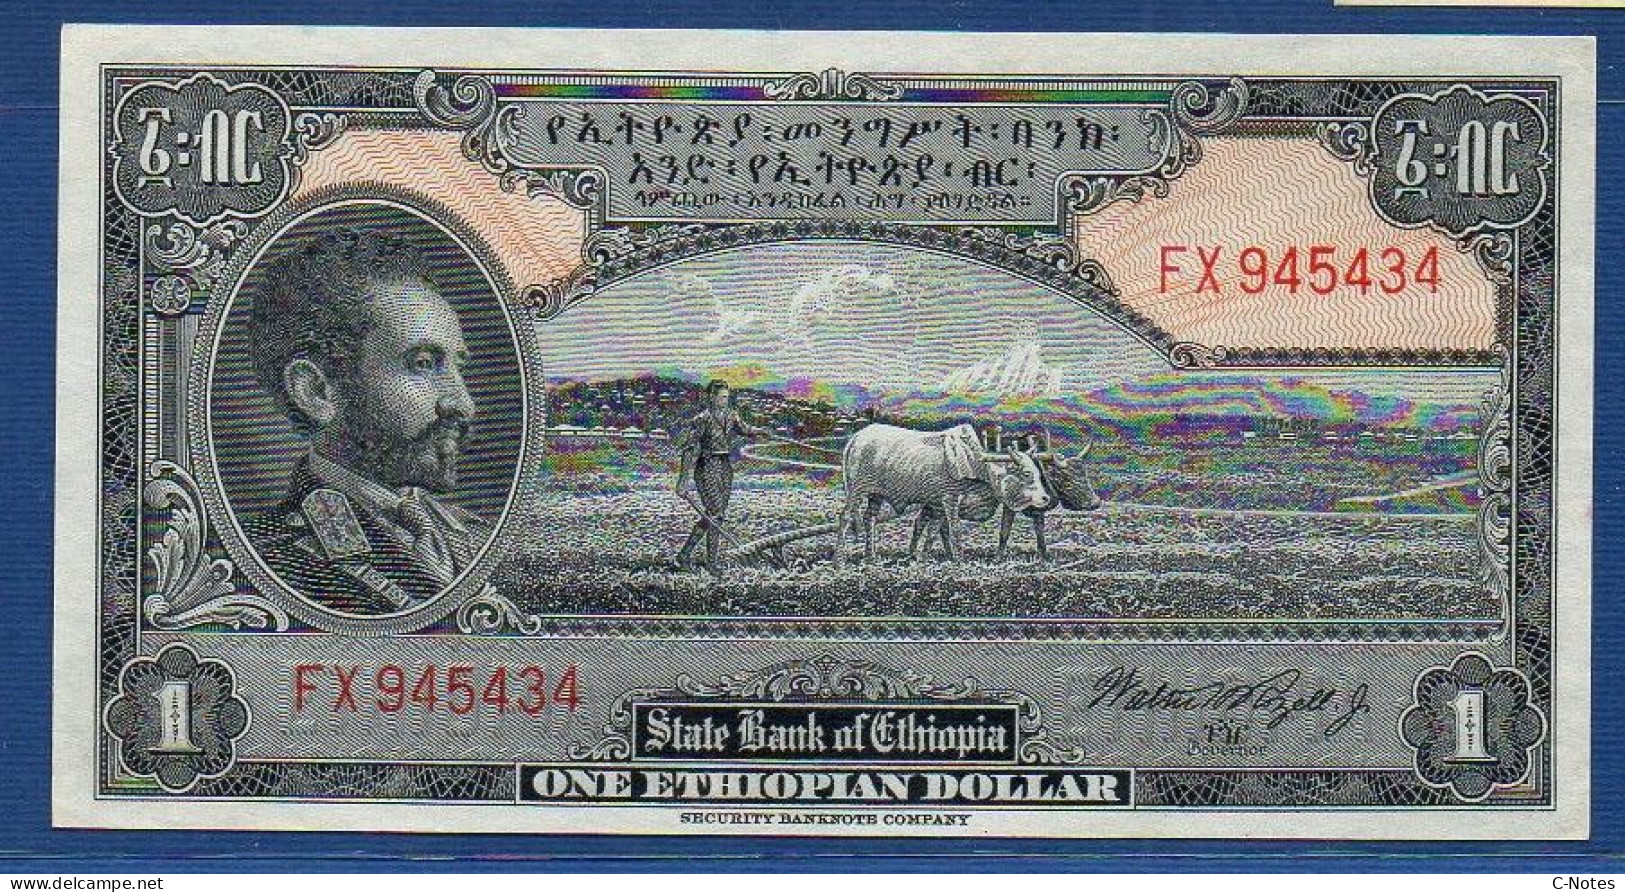 ETHIOPIA - P.12c – 1 Ethiopian Dollar ND (1945) UNC-,  S/n FX 945434 - Ethiopia